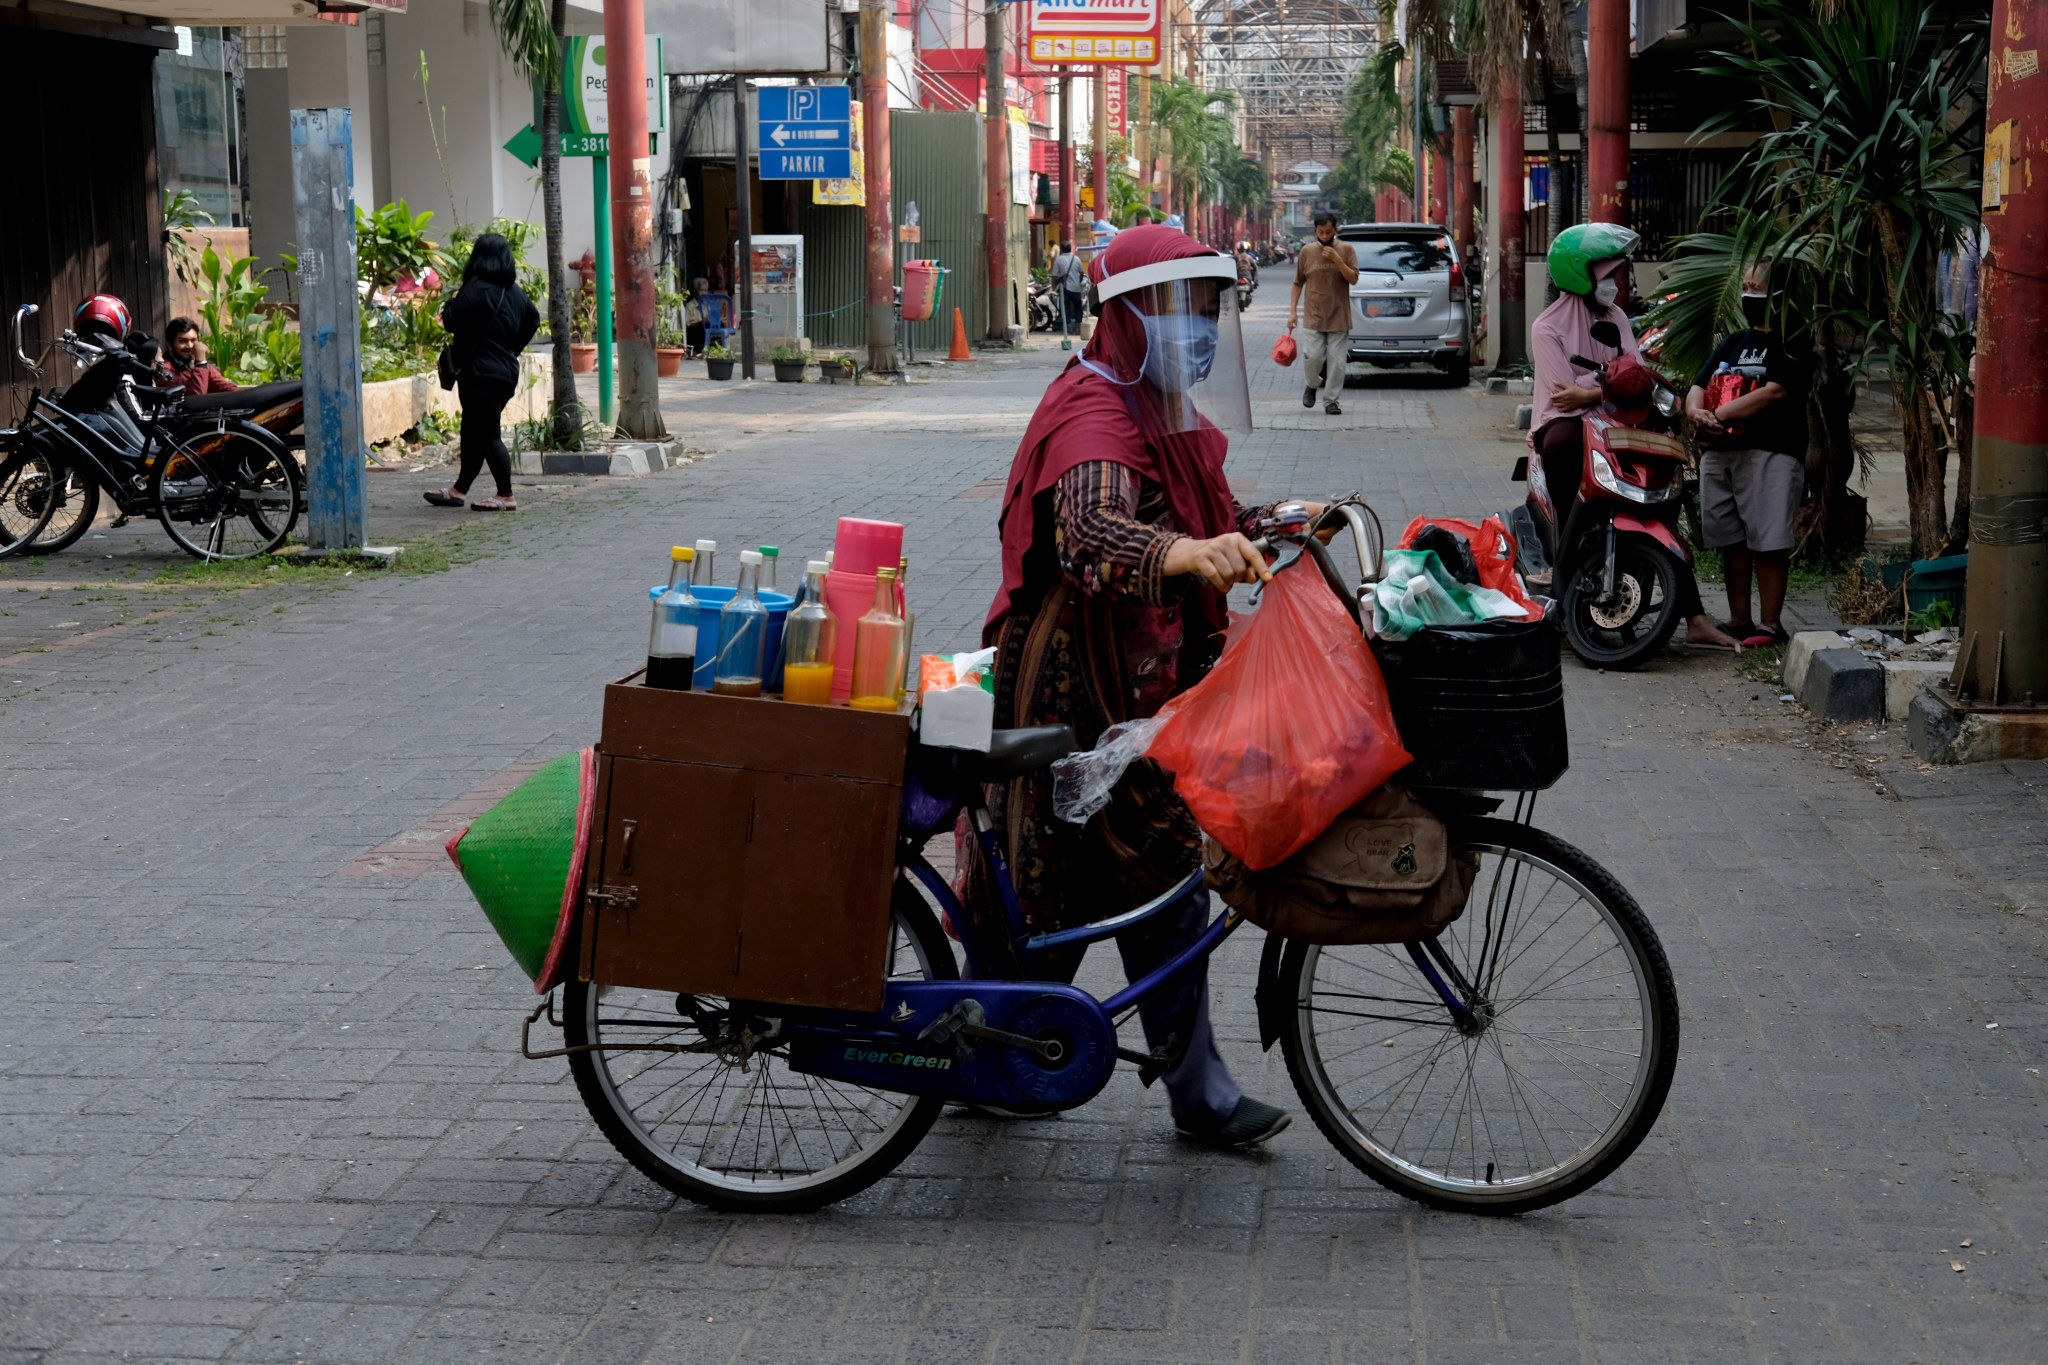 <p>Tidar (46), mendorong sepeda nya berjualan jamu keliling di Pasar Baru, Jakarta Pusat, Kamis 11 Juni 2020. Penjual jamu tradisional keliling ini tampak mematuhi protokol kesehatan pencegahan COVID-19 dengan mengenakan masker, face shield, dan sarung tangan dalam melayani pelanggan setianya di masa PSBB transisi. Foto: Ismail Pohan/TrenAsia</p>
